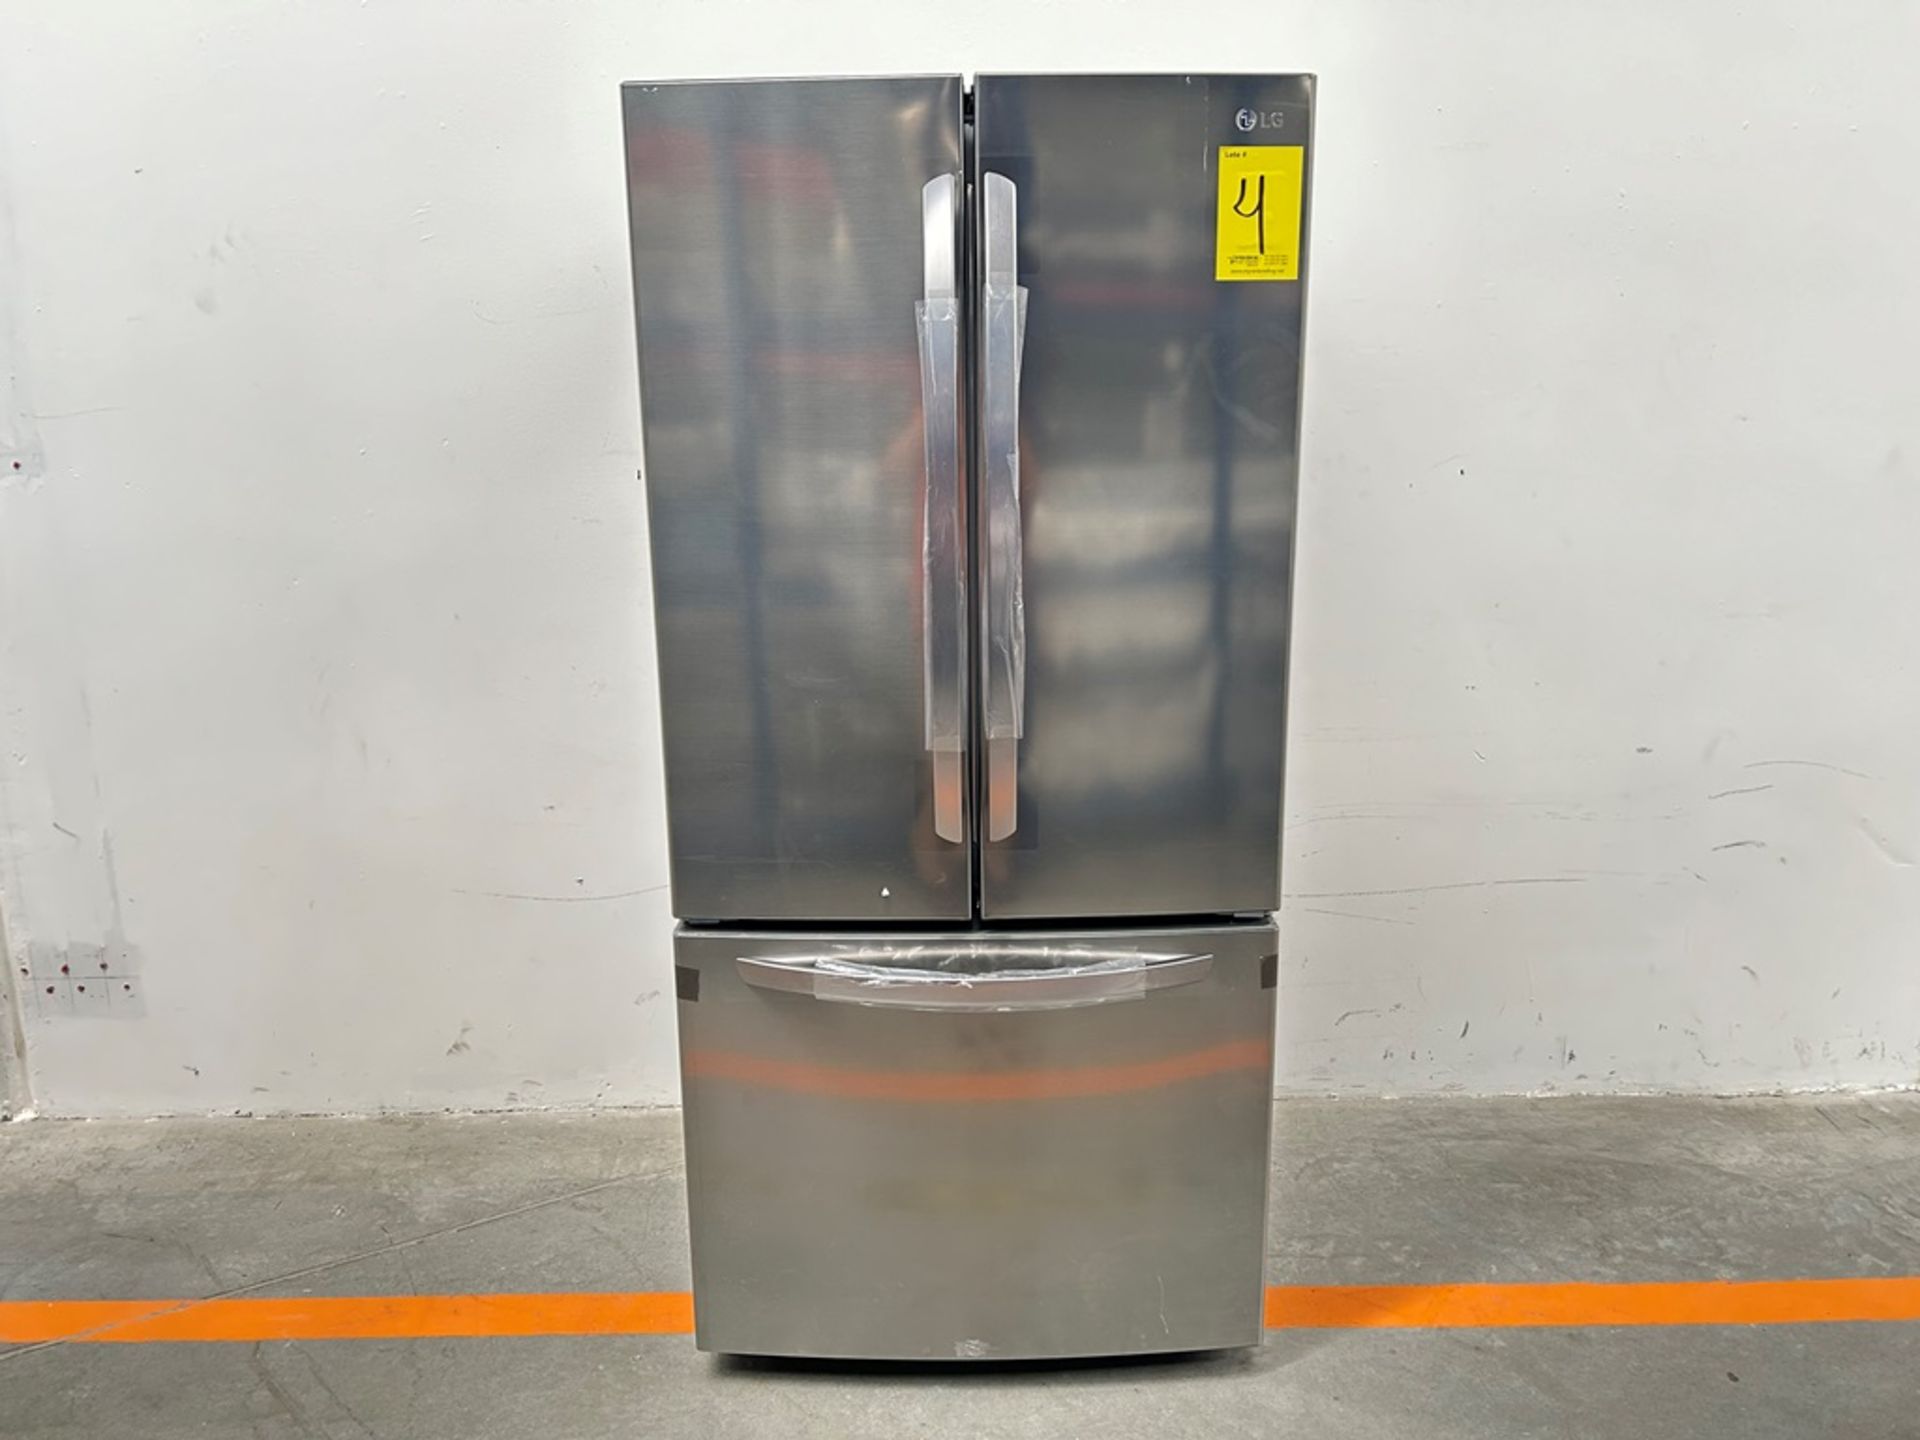 (NUEVO) Refrigerador Marca LG, Modelo GM65BGSK, Serie A30018, Color GRIS